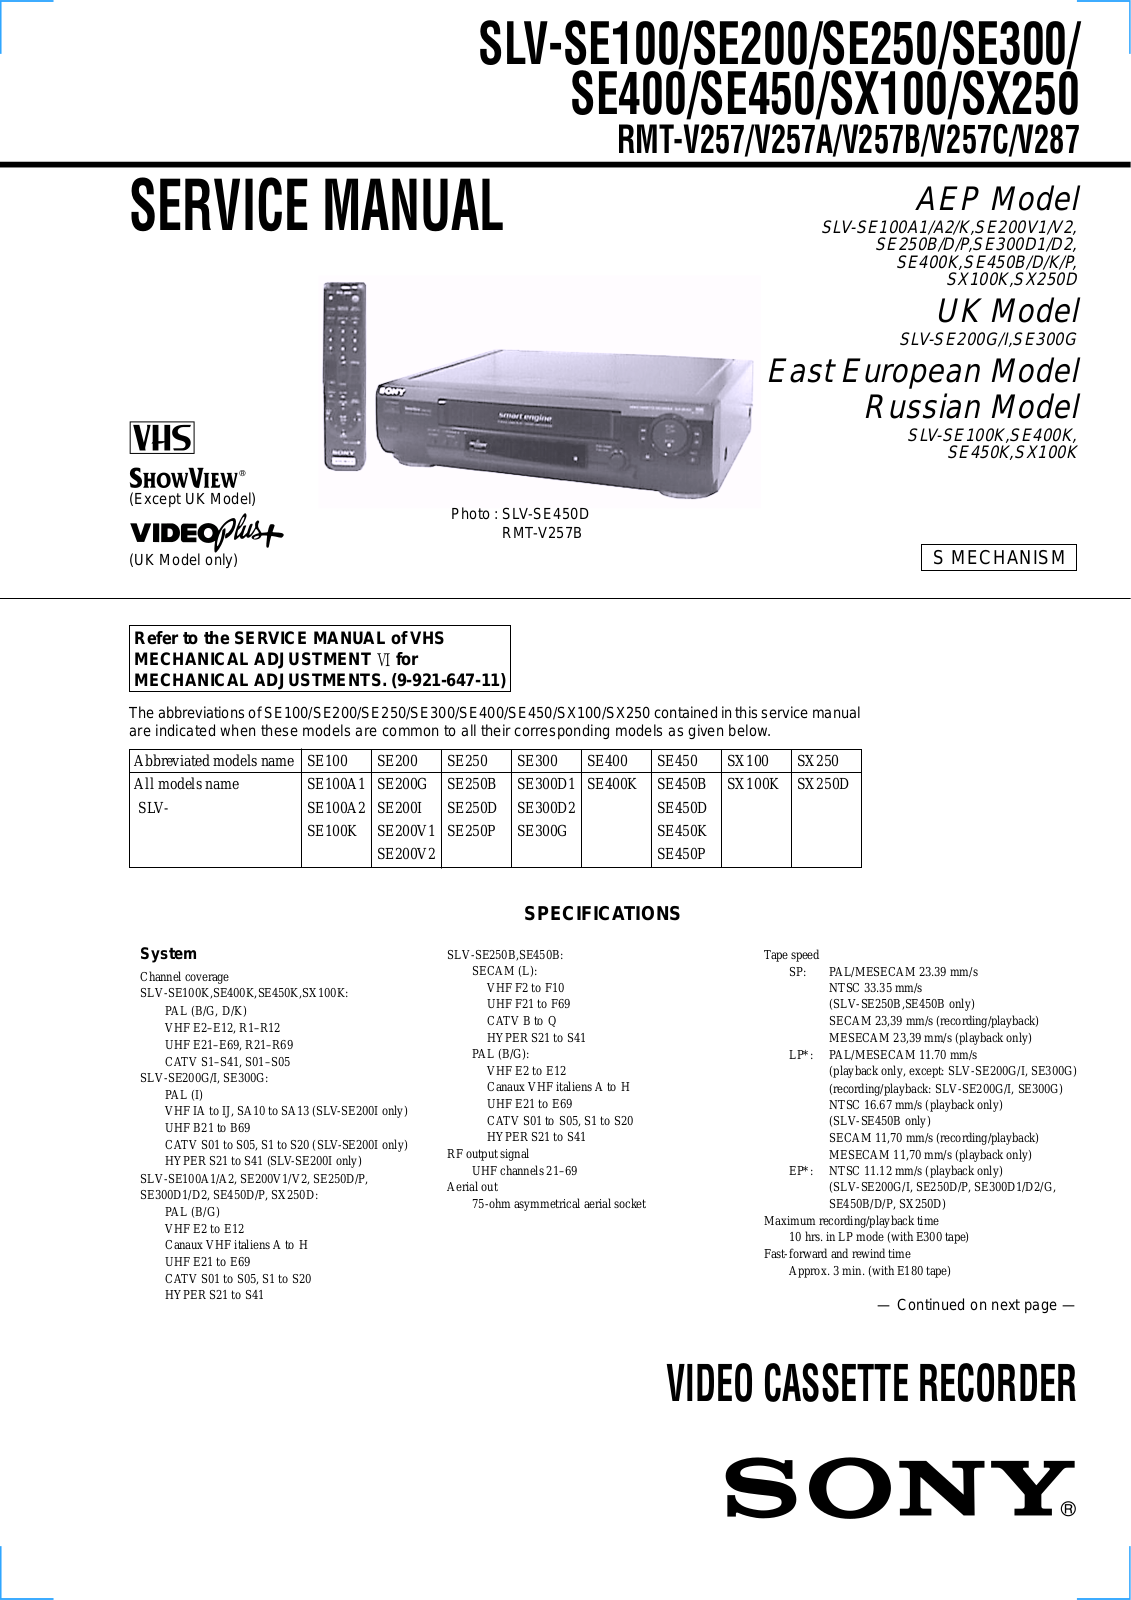 Sony SLV-SE100A1, SLV-SE100A2, SLV-SE100K, SLV-SE200G, SLV-SE200I Service Manual